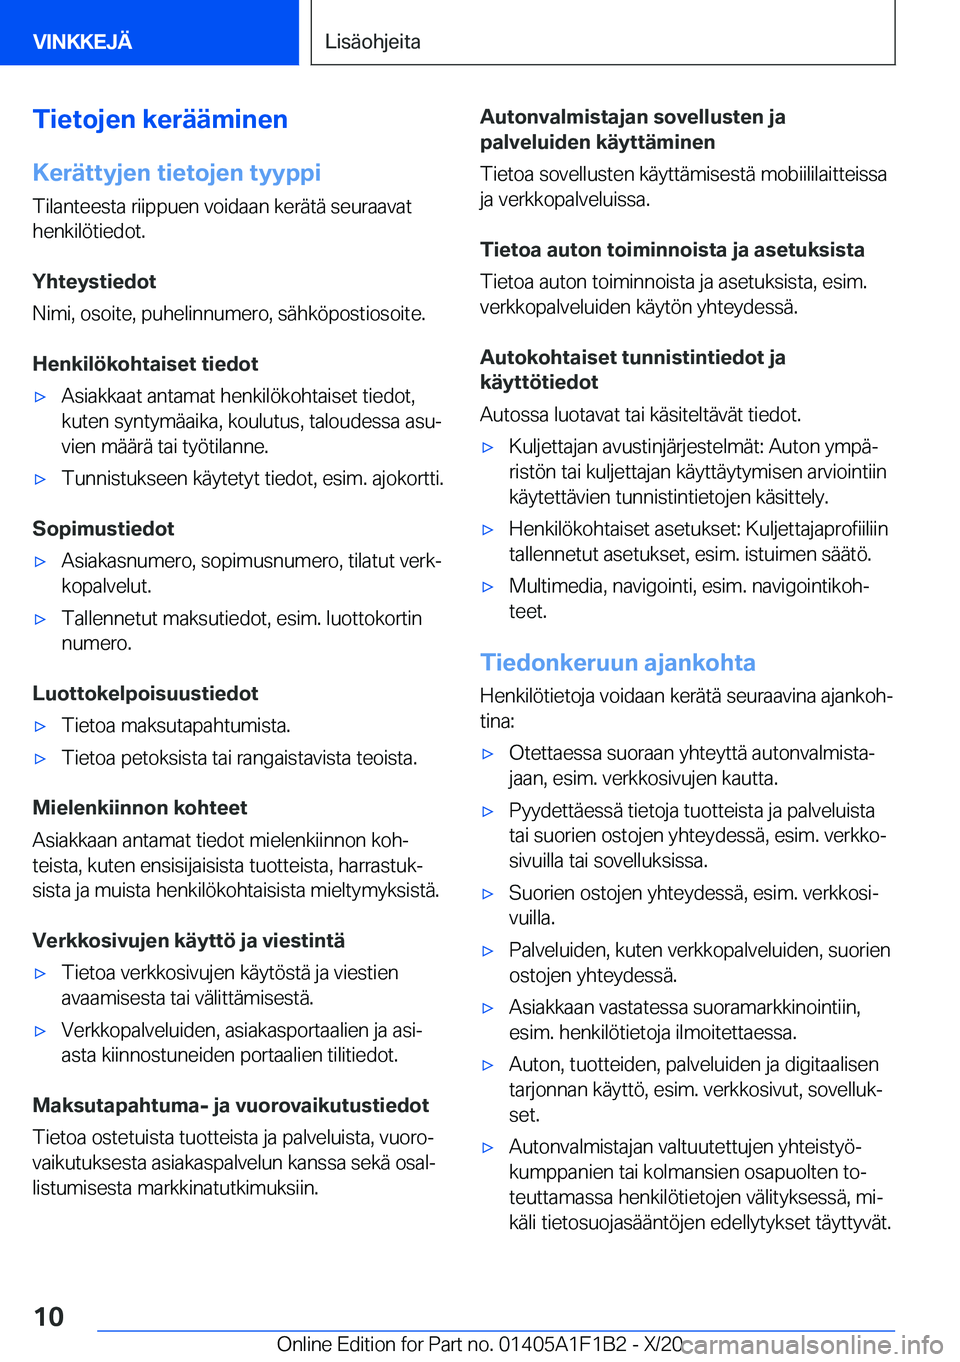 BMW M5 2021  Omistajan Käsikirja (in Finnish) �T�i�e�t�o�j�e�n��k�e�r�